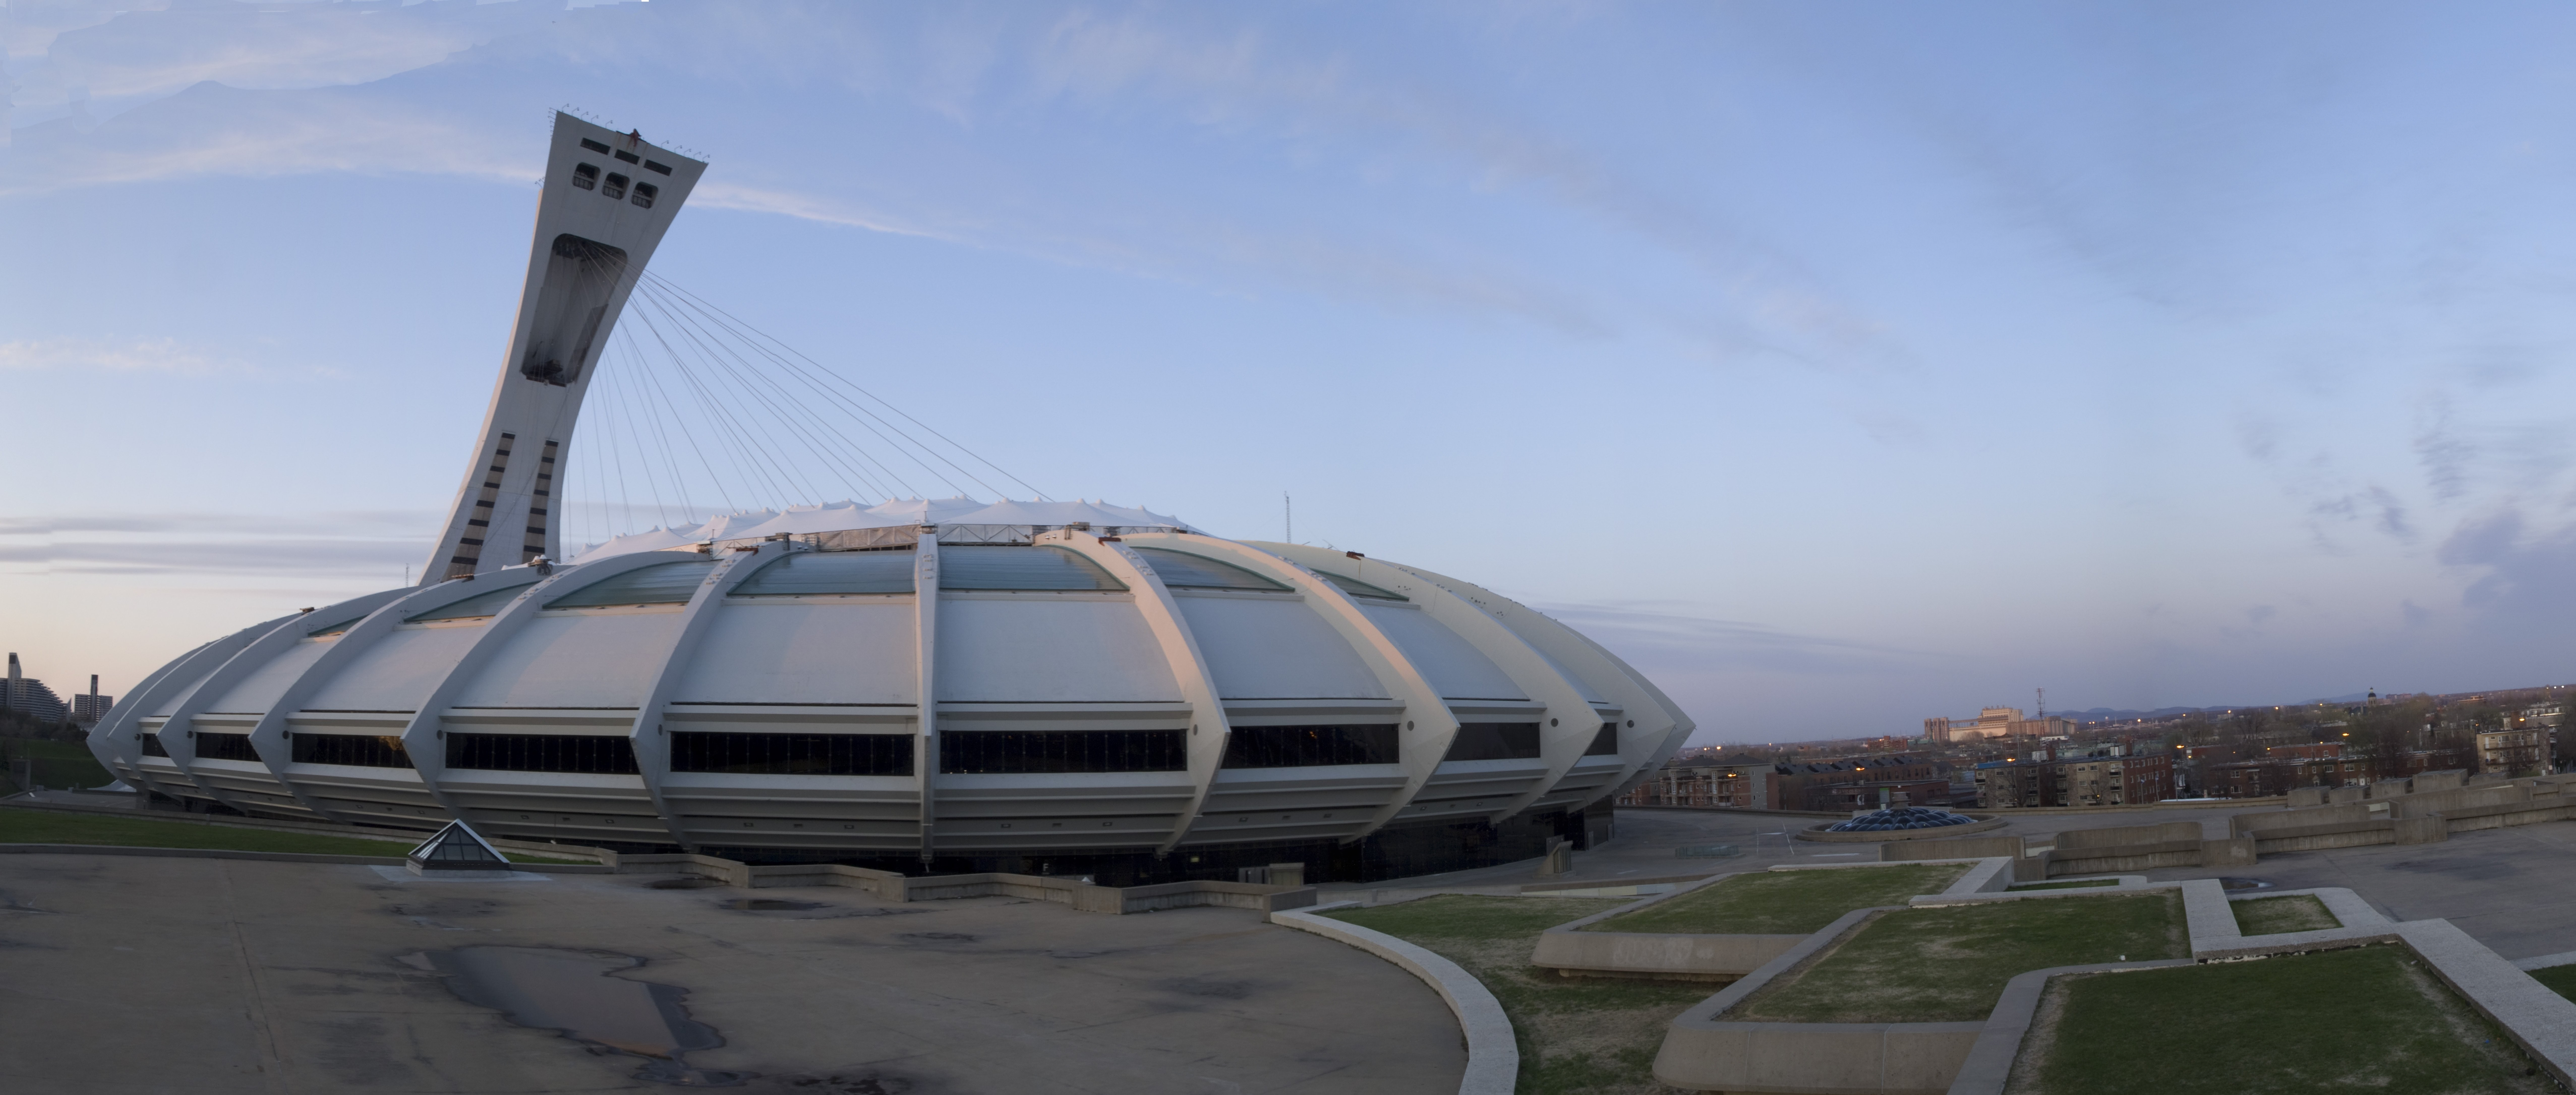 Photo du stade olympique de Québec